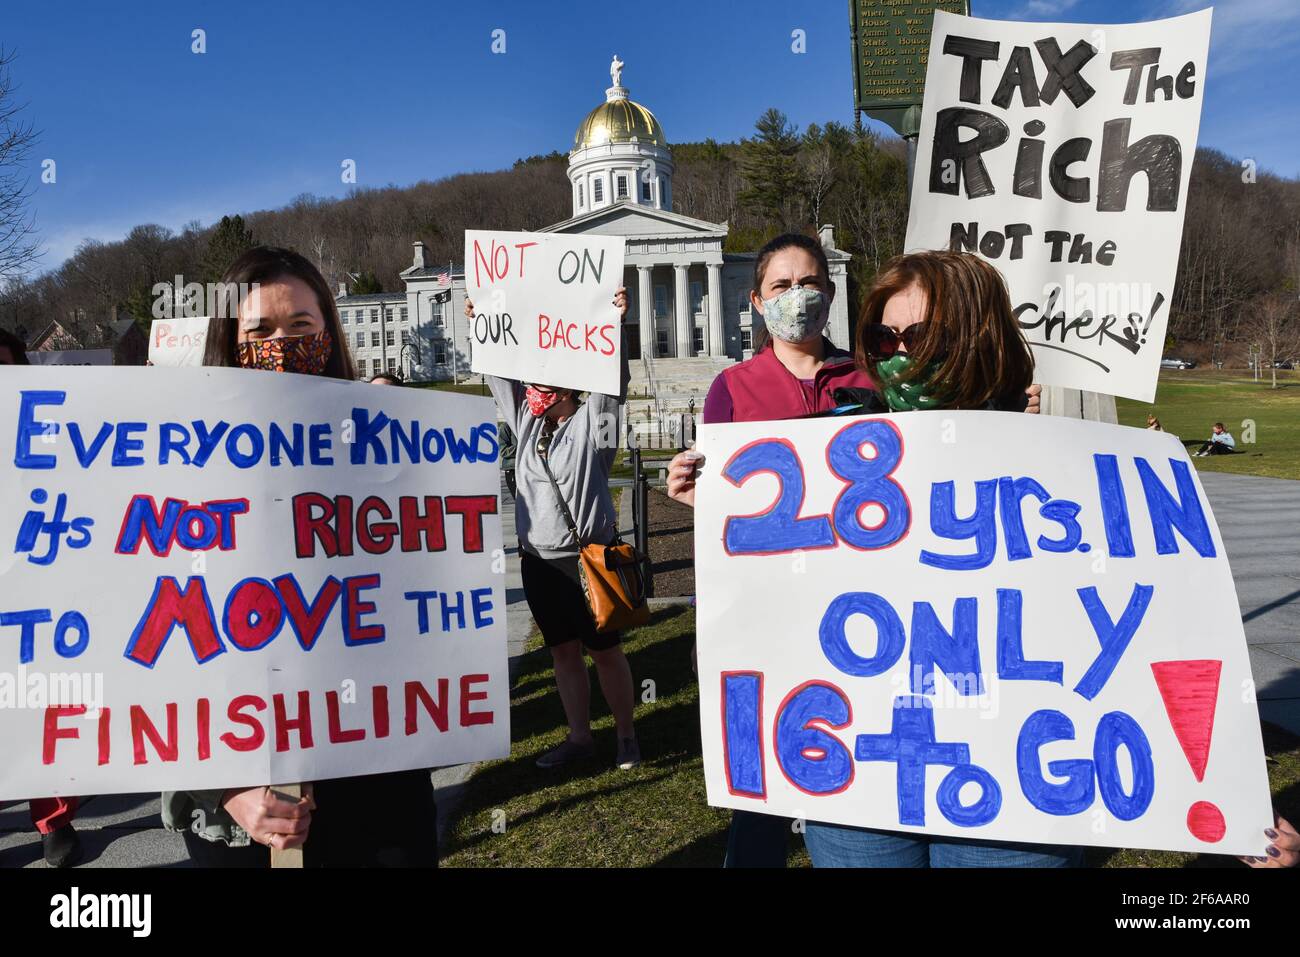 Manifestation des enseignants du Vermont pour protester contre les changements proposés dans leurs régimes de retraite publics, Vermont State House, Montpelier, VT, États-Unis. Banque D'Images